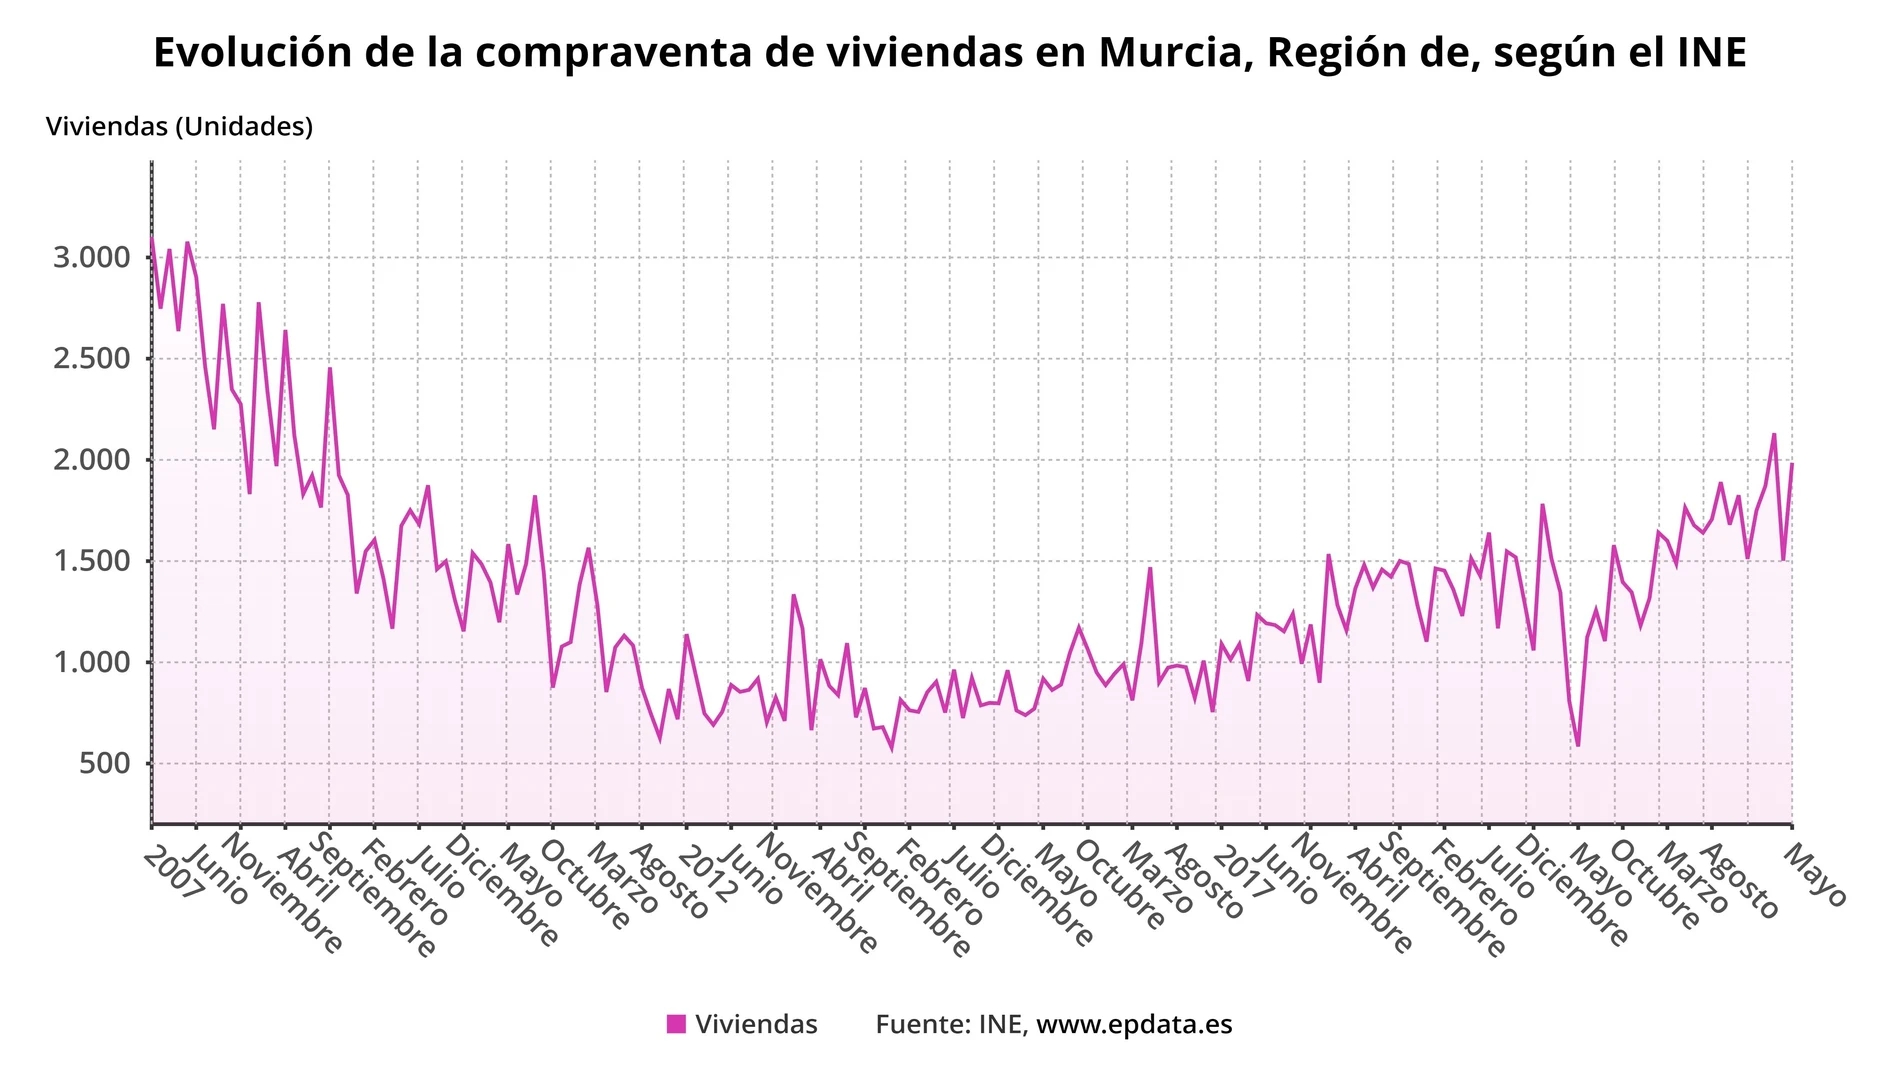 Gráfica que muestra la evolución de la compraventa de viviendas en la Región de Murcia